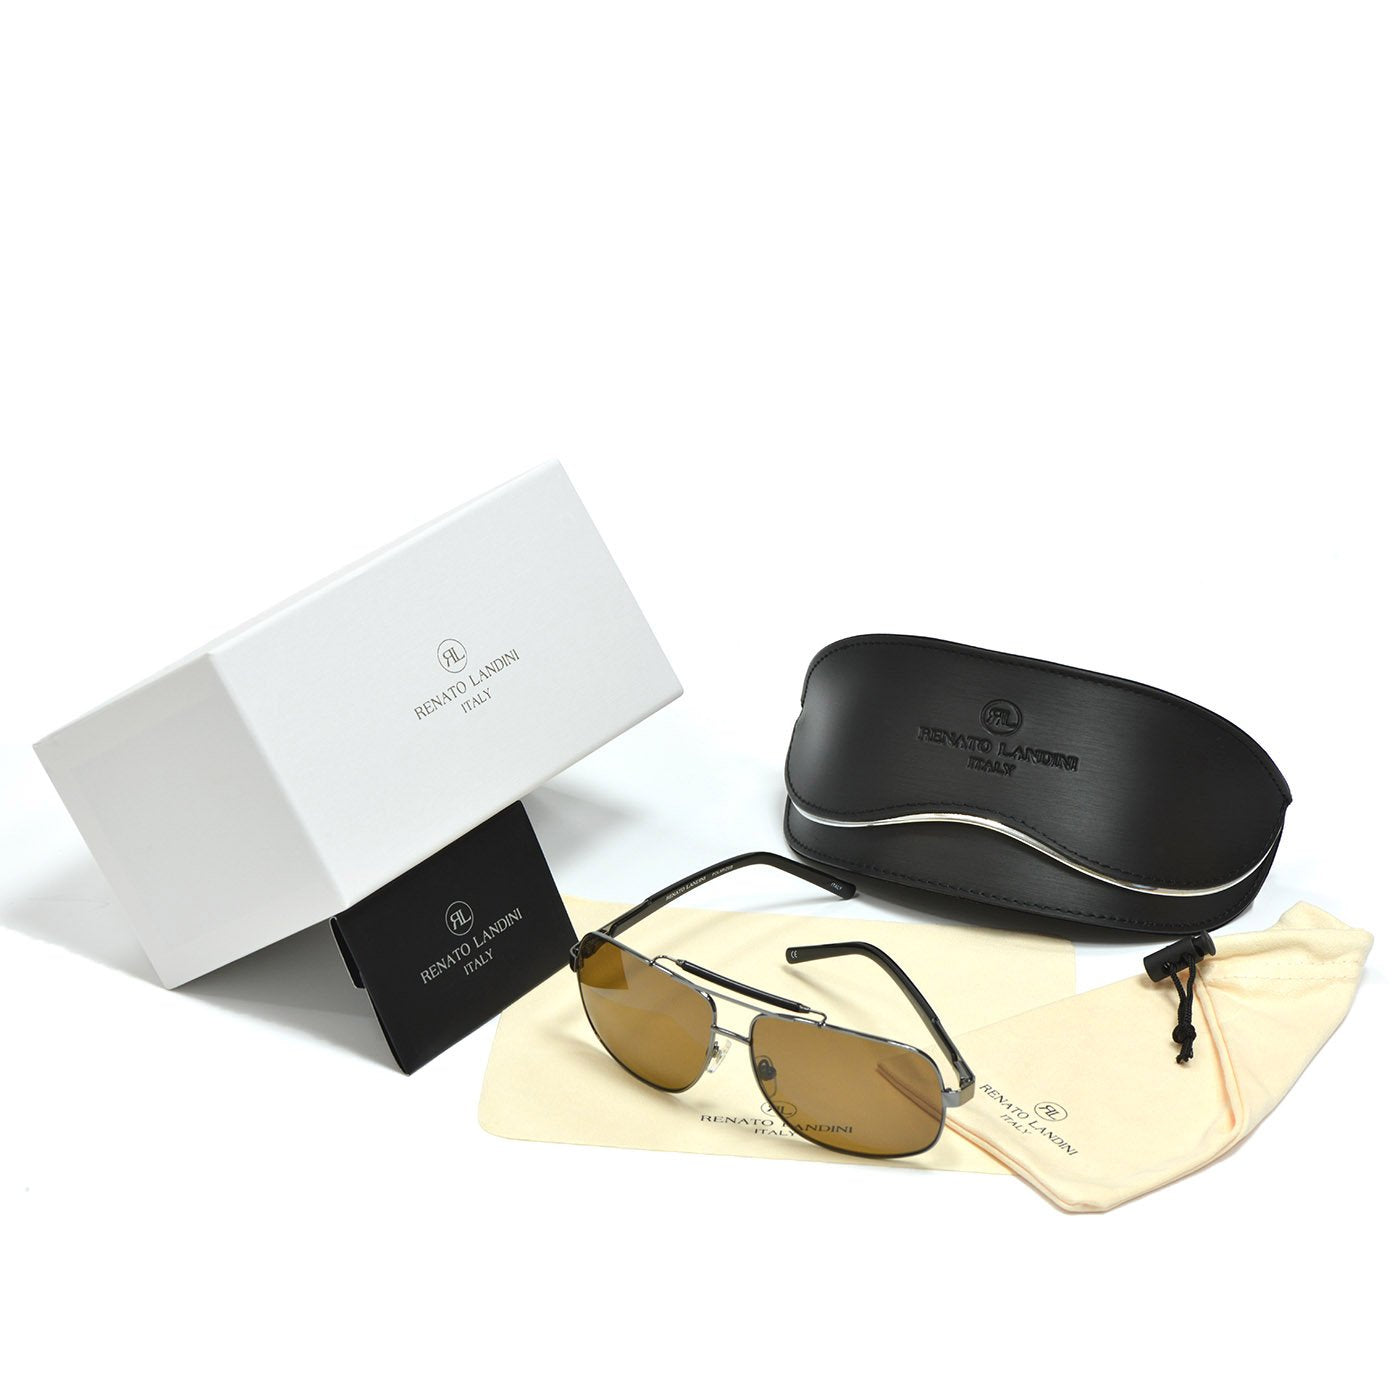 RENATO LANDINI Men's Sunglasses Black/ Sun Shield